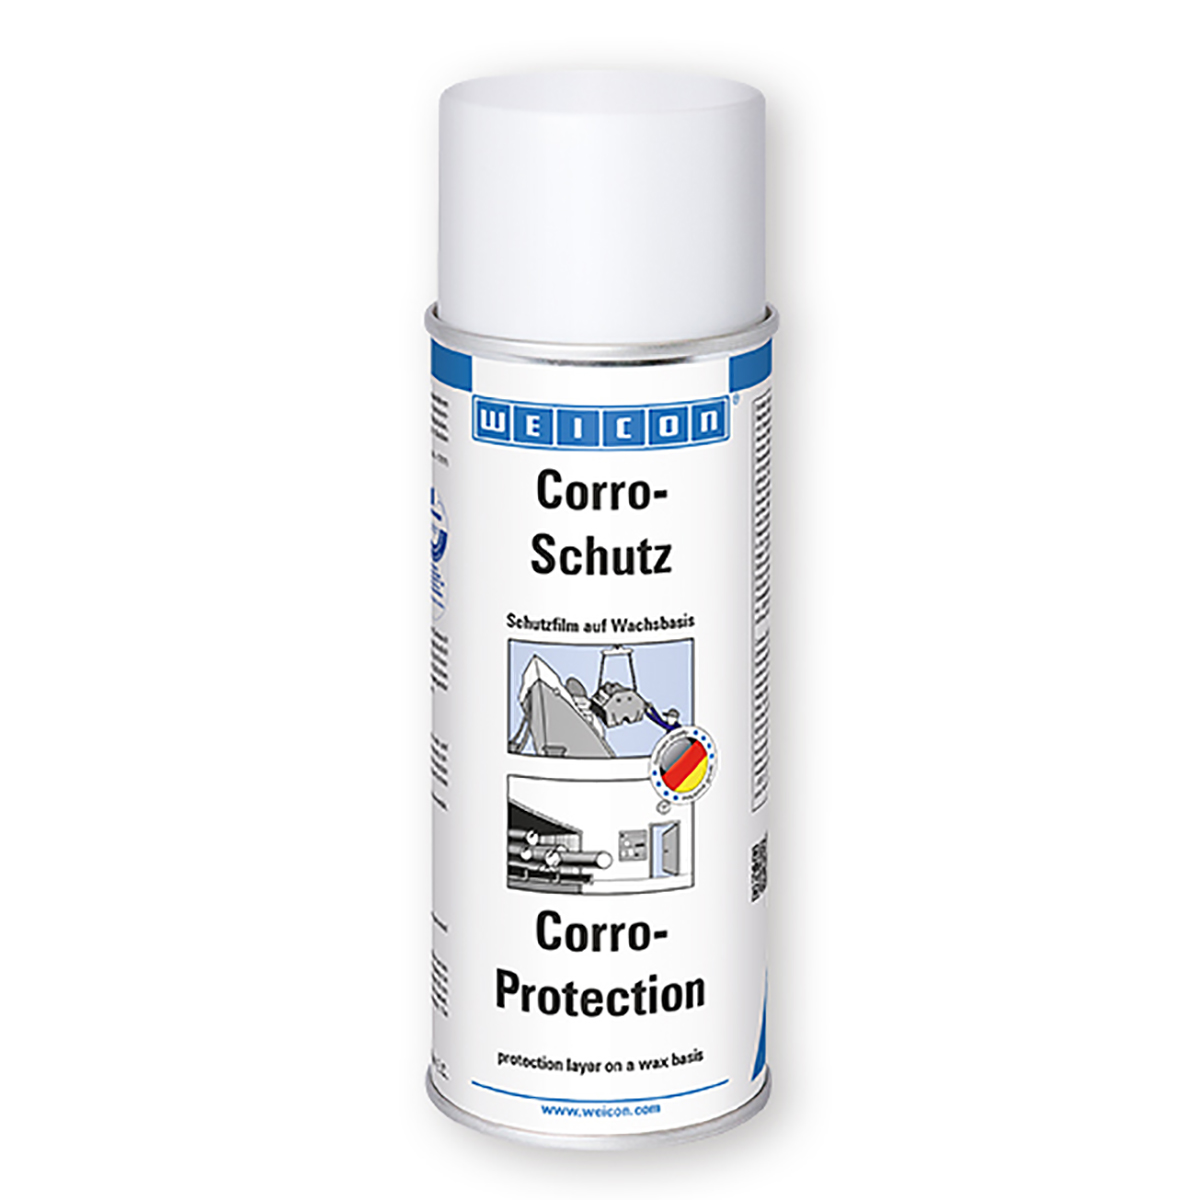 Weicon Corro-Protection Spray